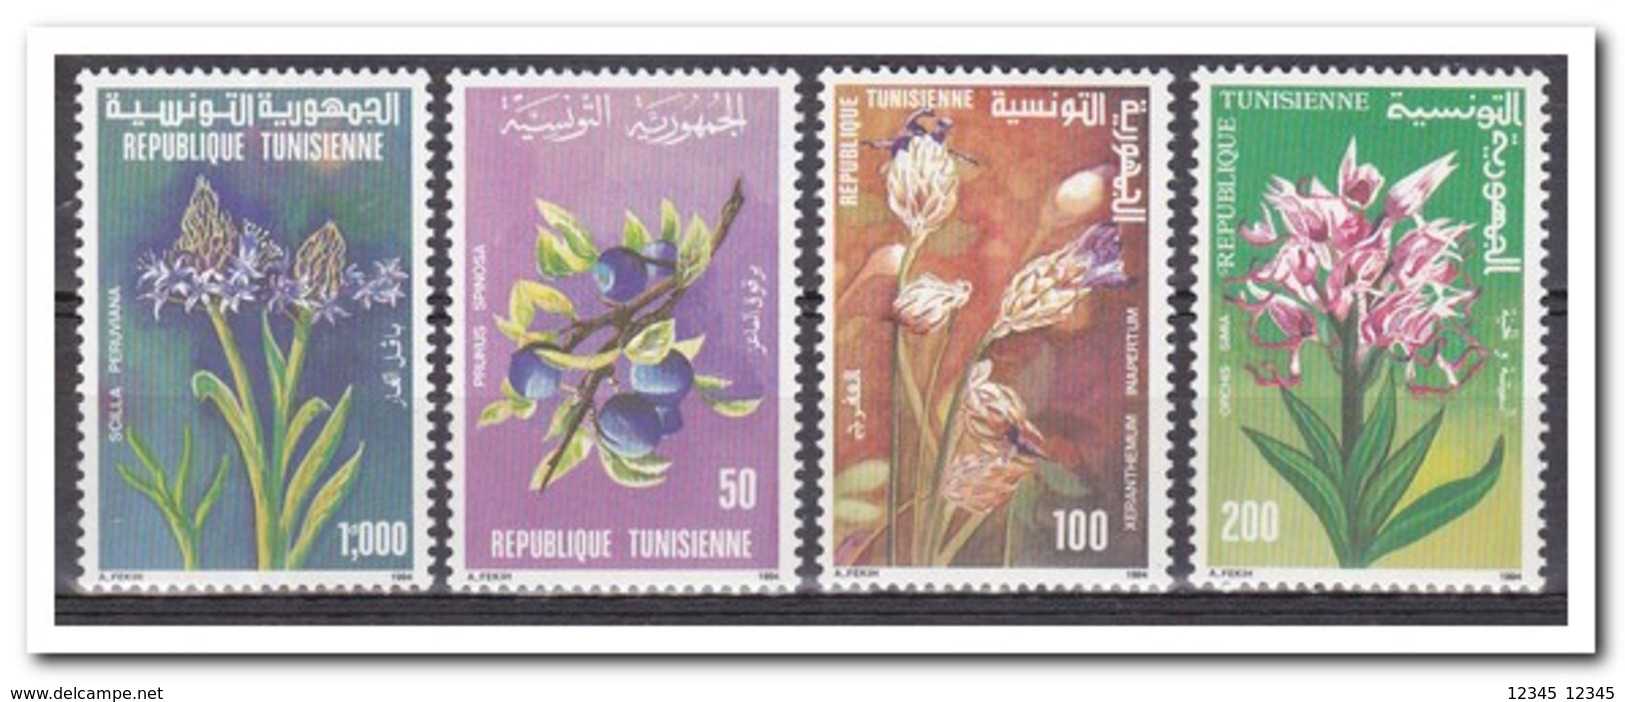 Tunesië 1994, Postfris MNH, Flowers - Tunesië (1956-...)